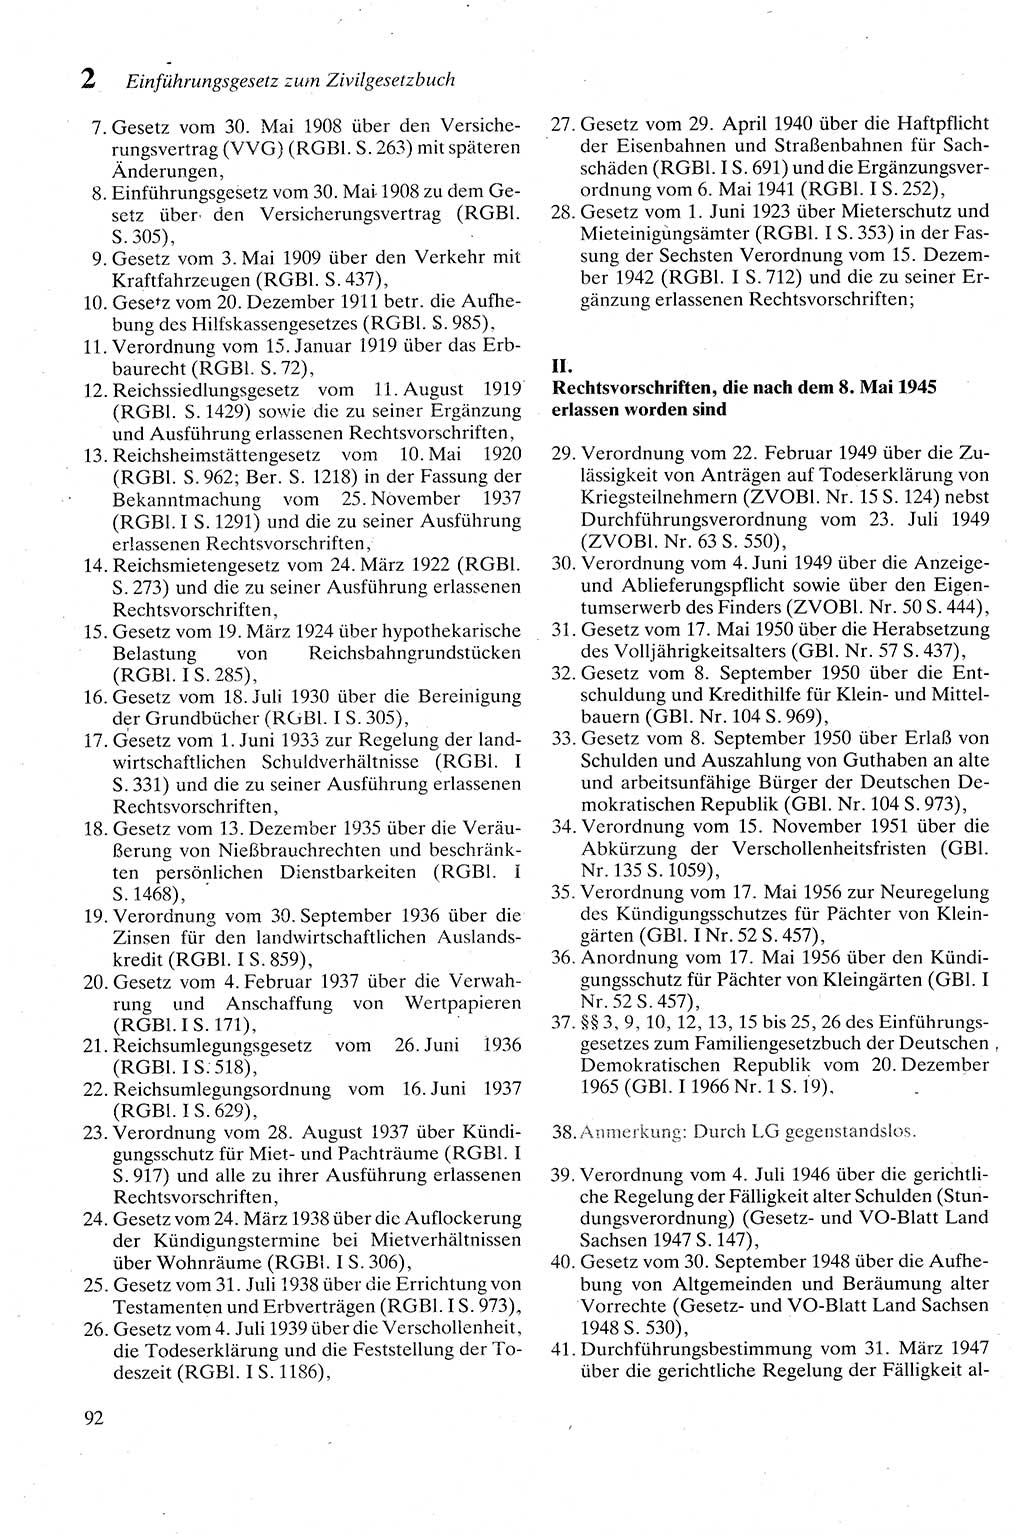 Zivilgesetzbuch (ZVG) sowie angrenzende Gesetze und Bestimmungen [Deutsche Demokratische Republik (DDR)] 1975, Seite 92 (ZGB Ges. Best. DDR 1975, S. 92)